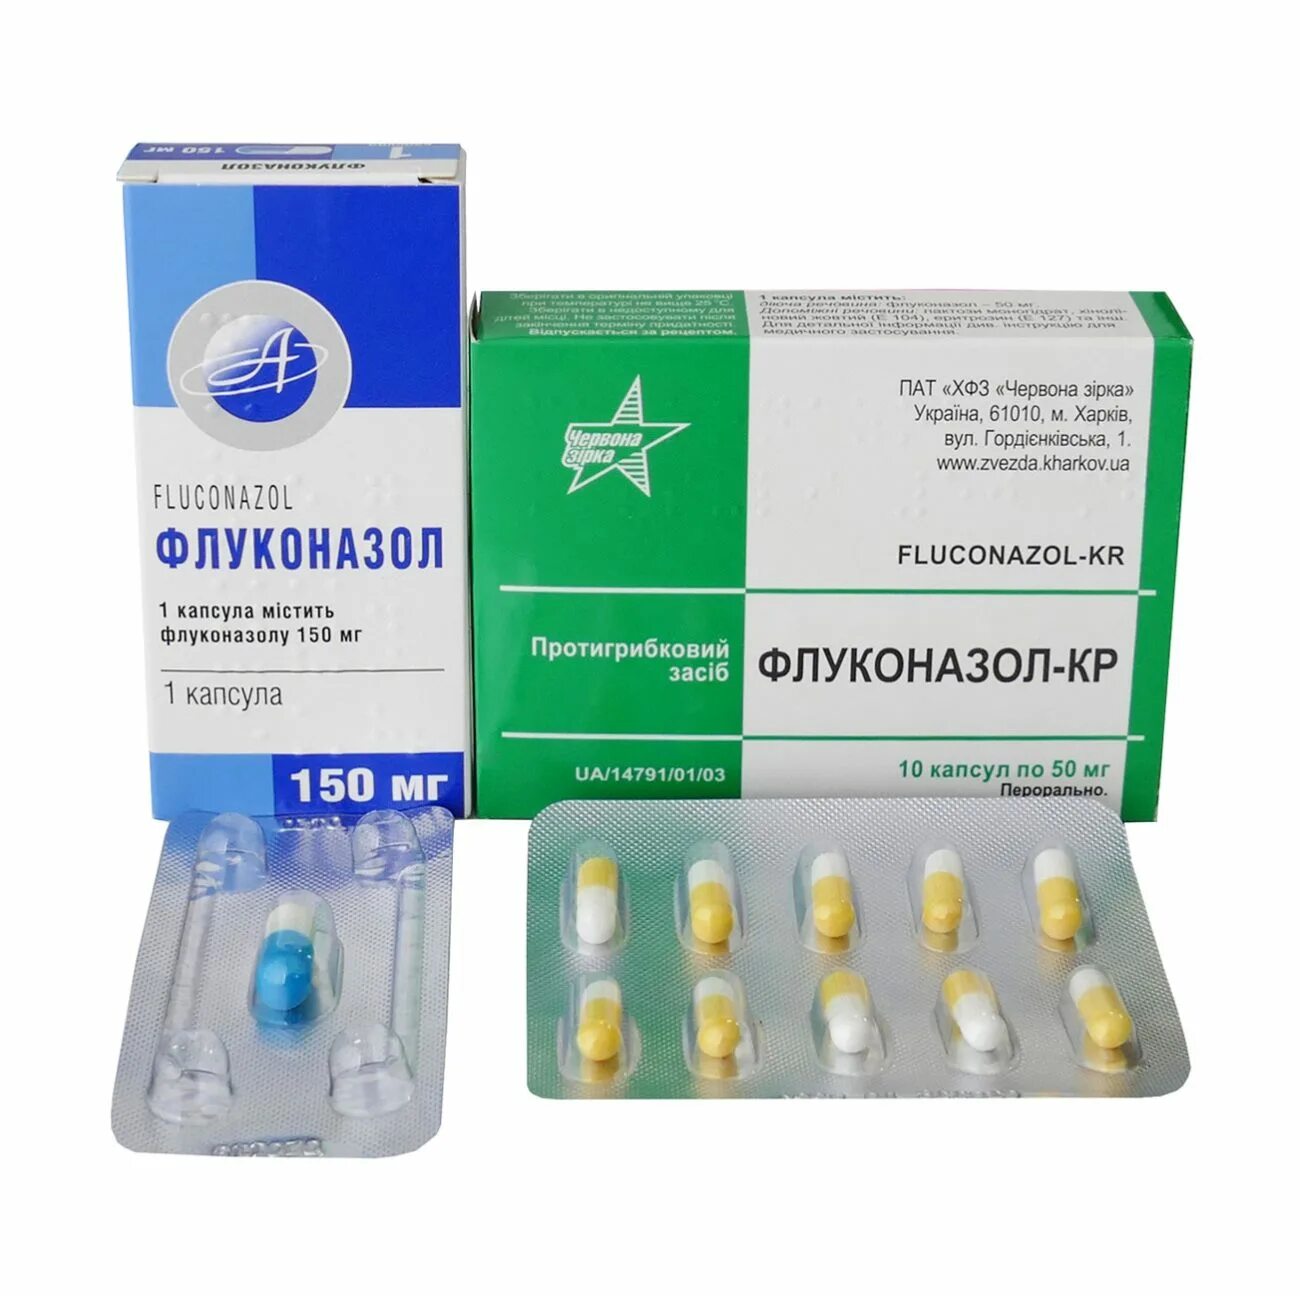 Флуконазол капсулы 400 мг. Таблетки от молочницы флуконазол 150. Капсула от молочницы флуконазол 150. Противогрибковые капсулы флуконазол. От молочницы цена аналоги